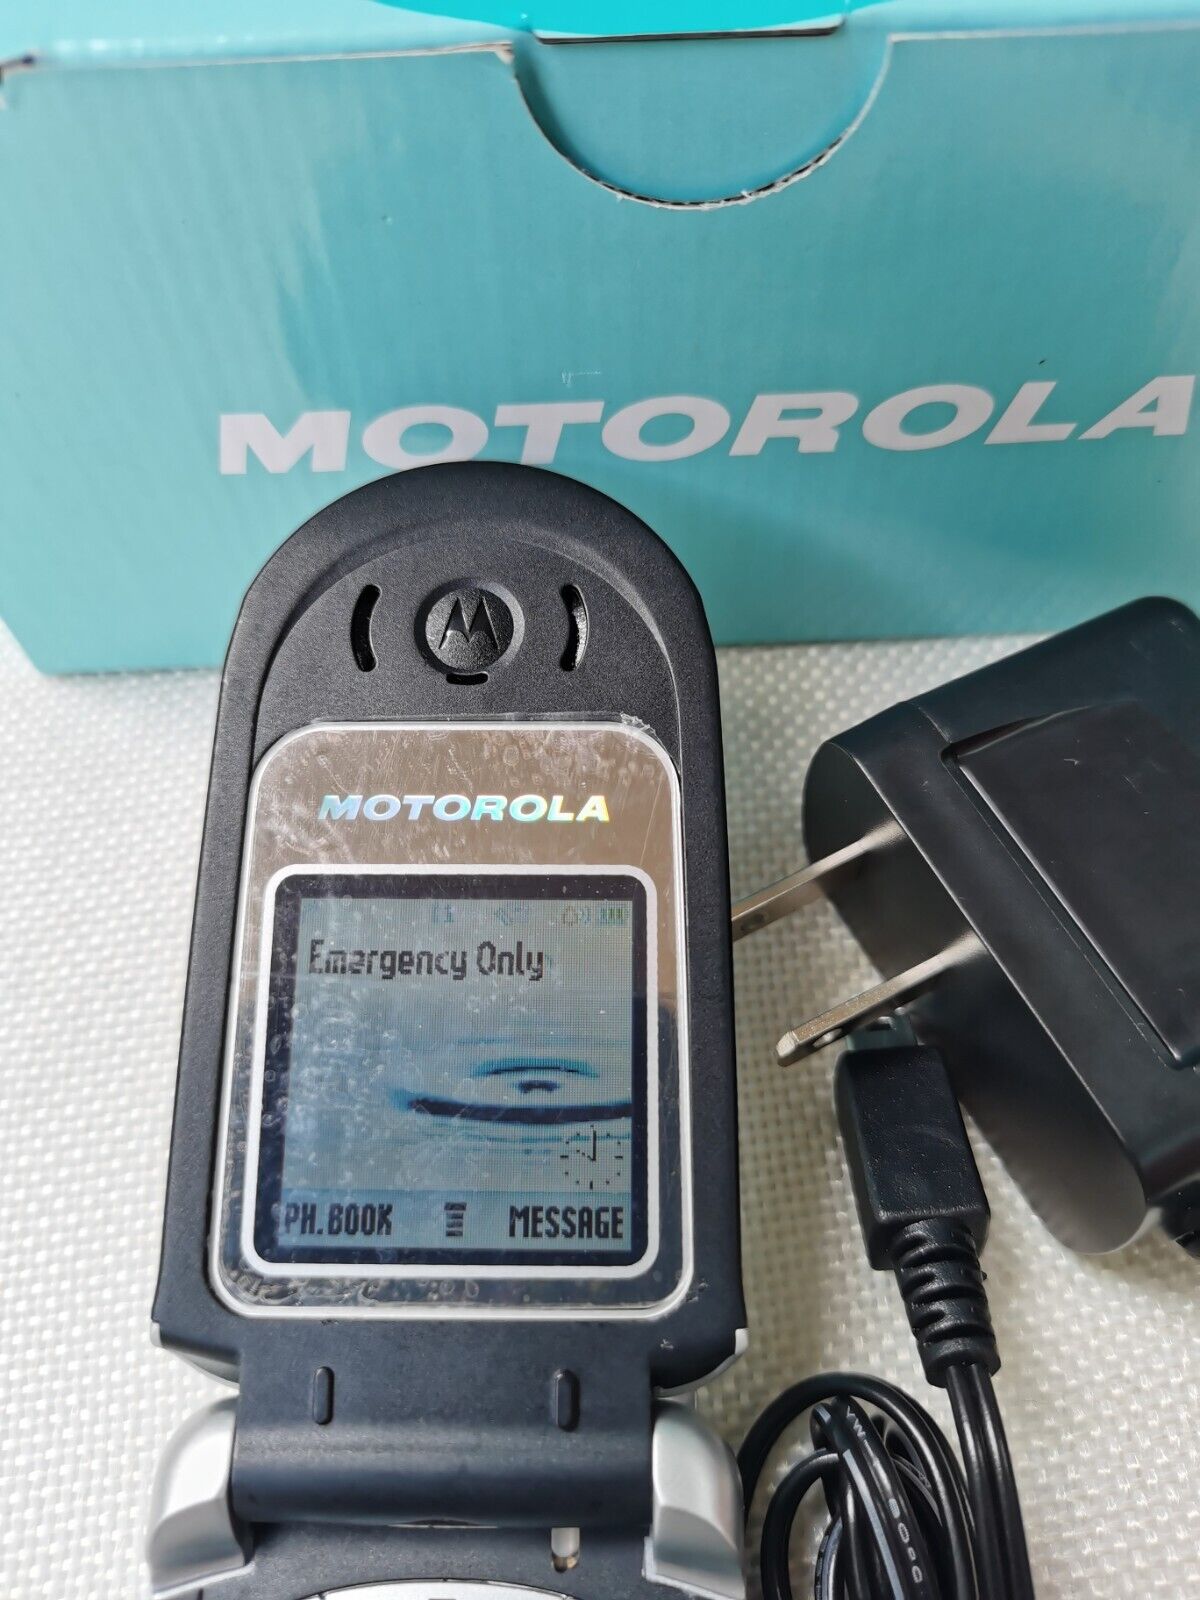 Full working Motorola V180 Black unlocked 2G networks Vintage mobile phone